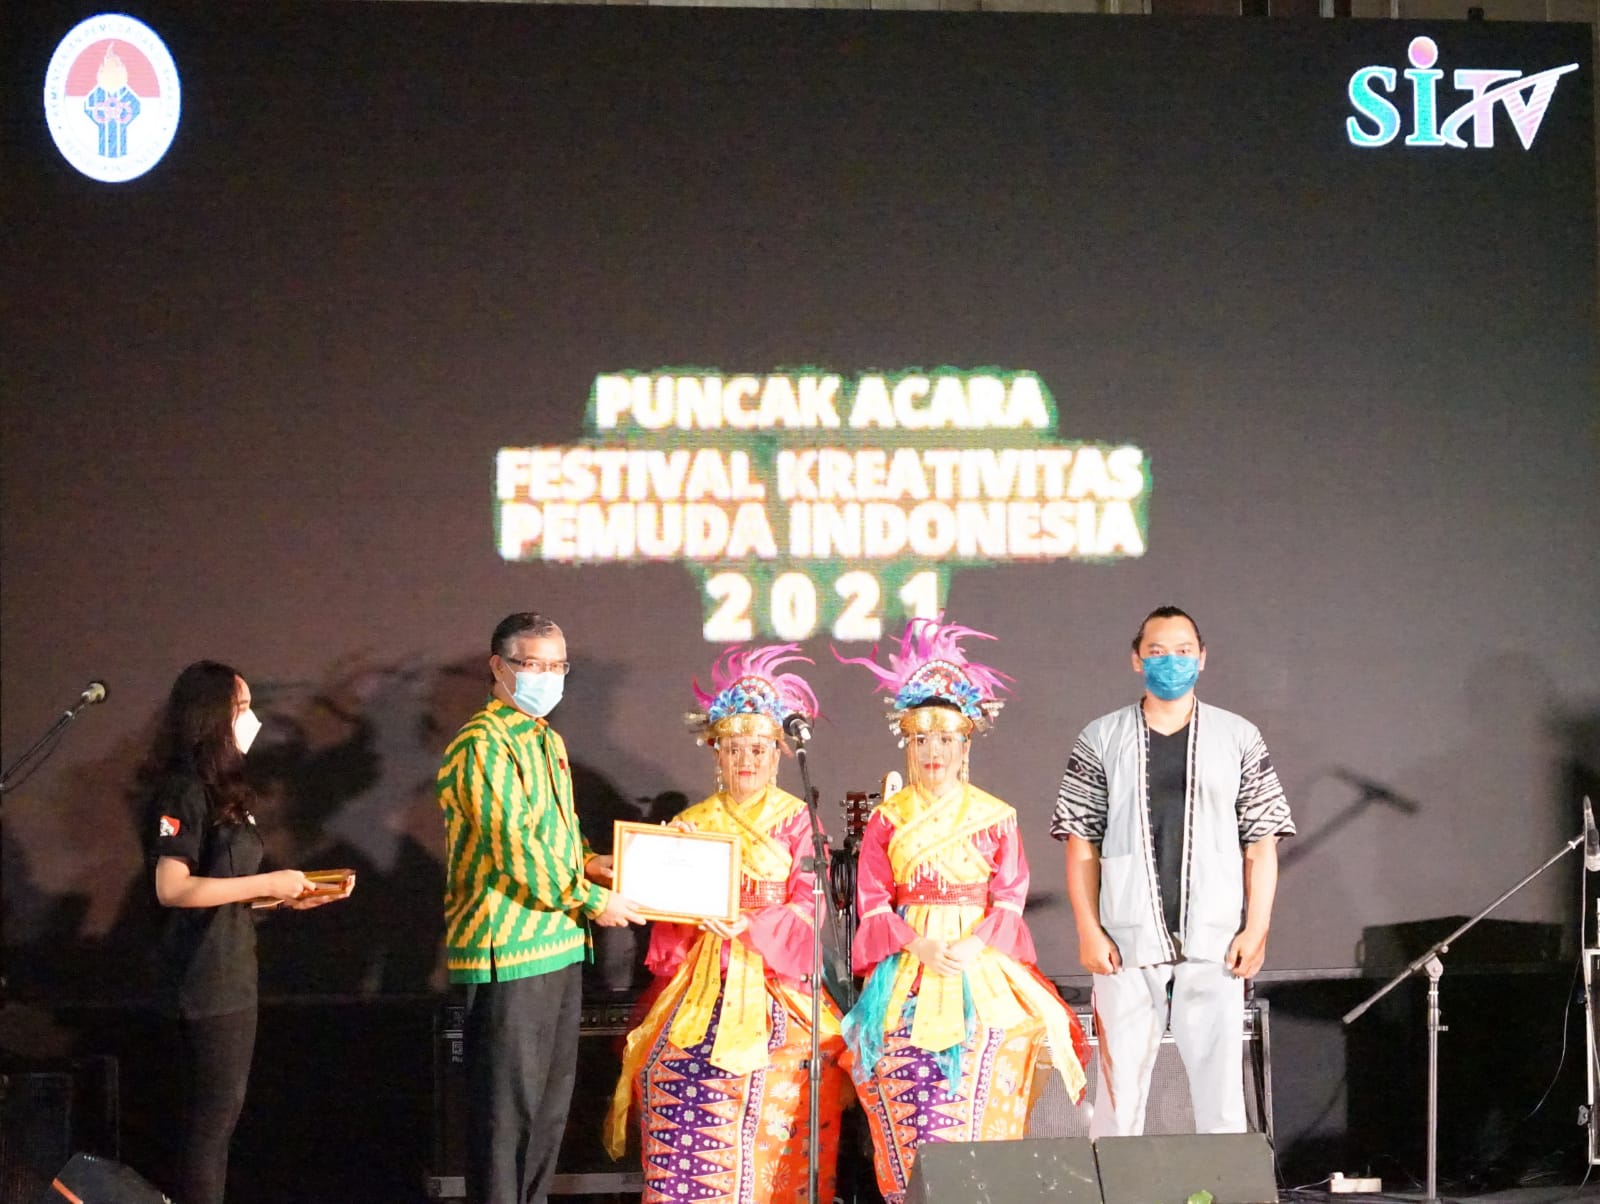 Kemenpora Gelar Festival Kreativitas Pemuda Indonesia 2021 Sebagai Ajang Bangkitkan Semangat Pemuda untuk Berkarya